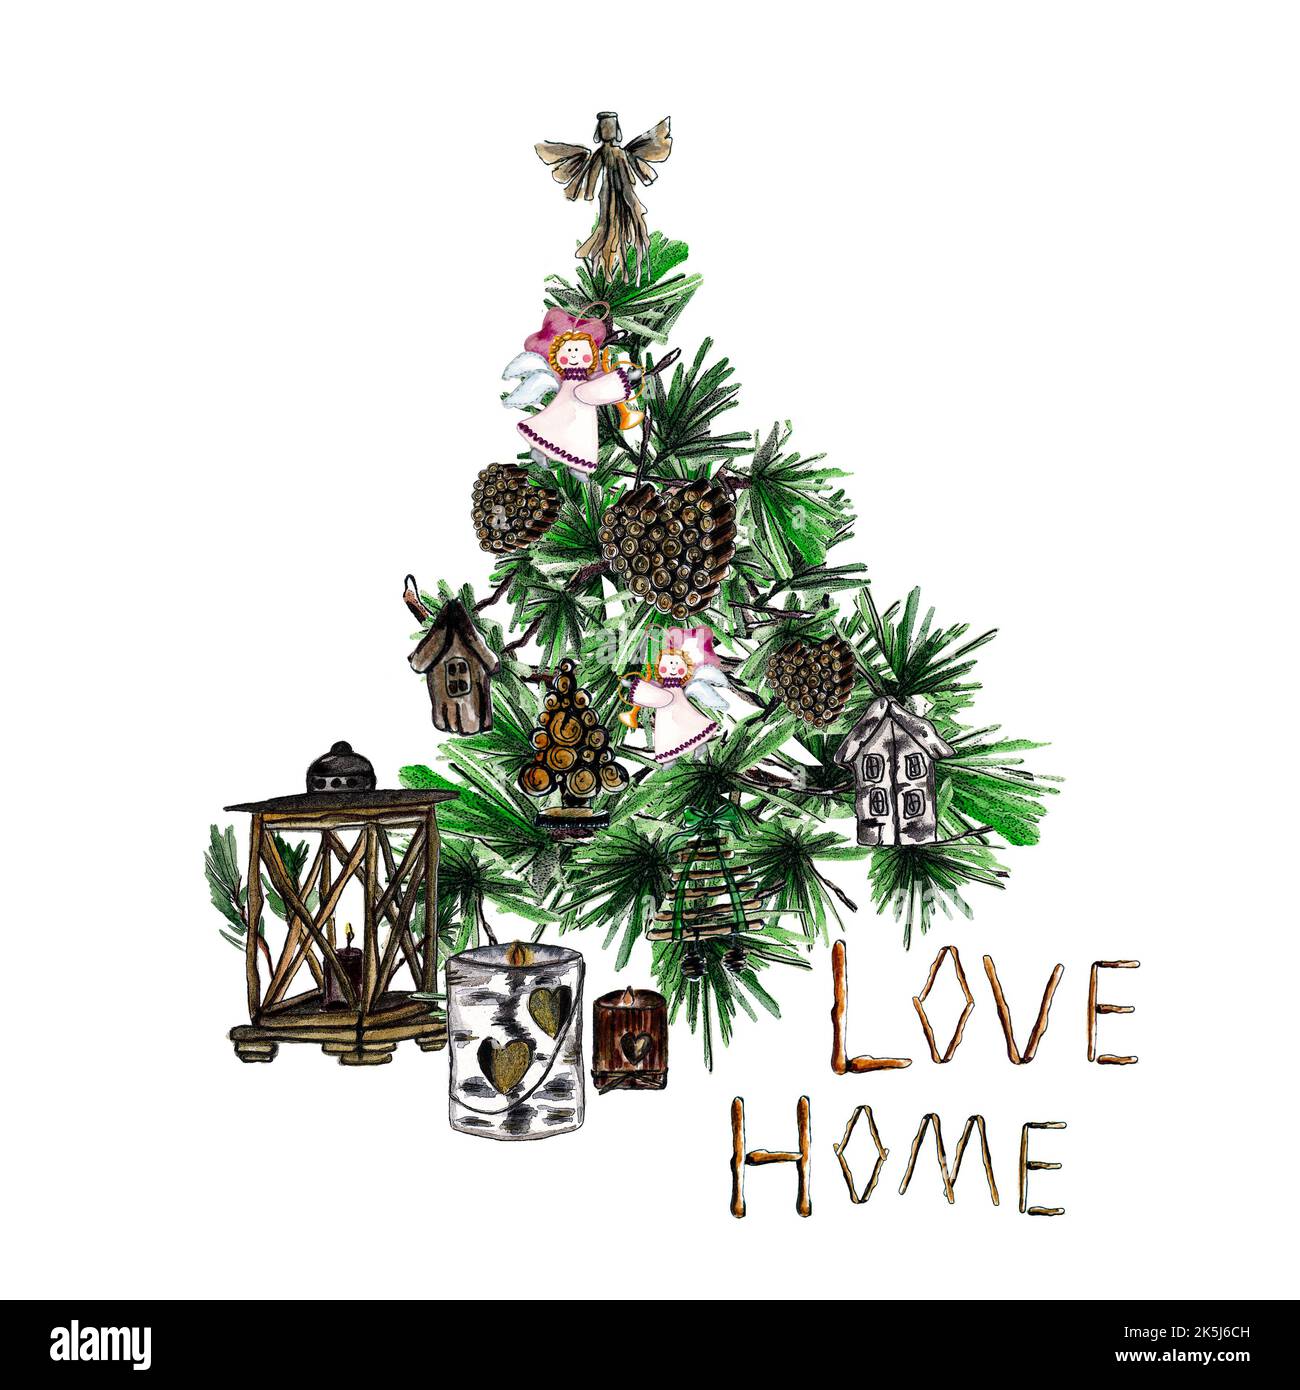 Aquarelle arbre du nouvel an avec décorations en bois de Noël : branches en pin avec coeur en laine, inscription Love Home, lampe de poche en bois et porte-bougie Banque D'Images